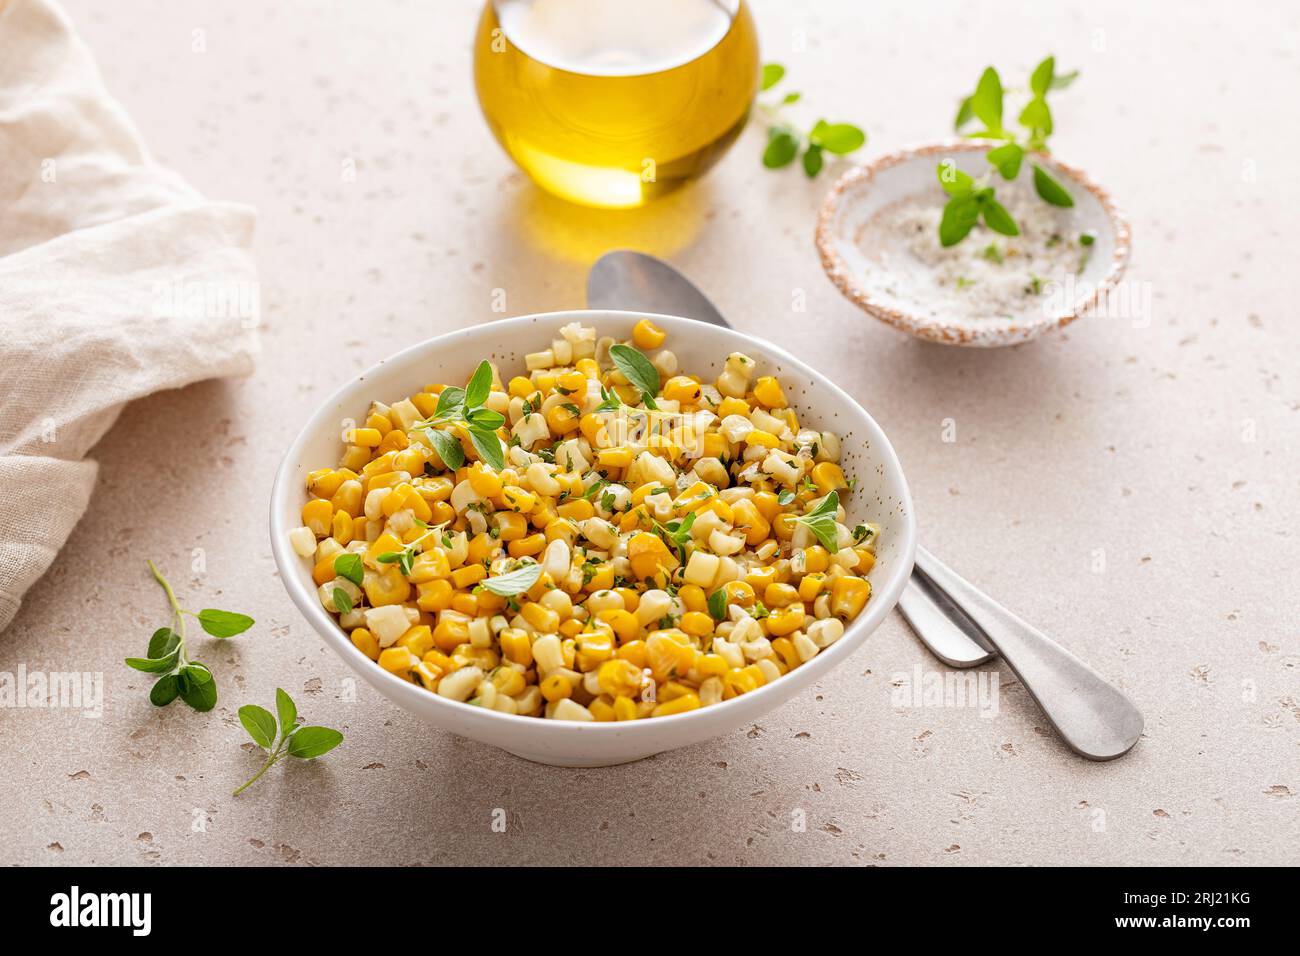 Maïs jaune et blanc sauté avec des herbes, plat d'accompagnement sain ou idée de recette de salade Banque D'Images